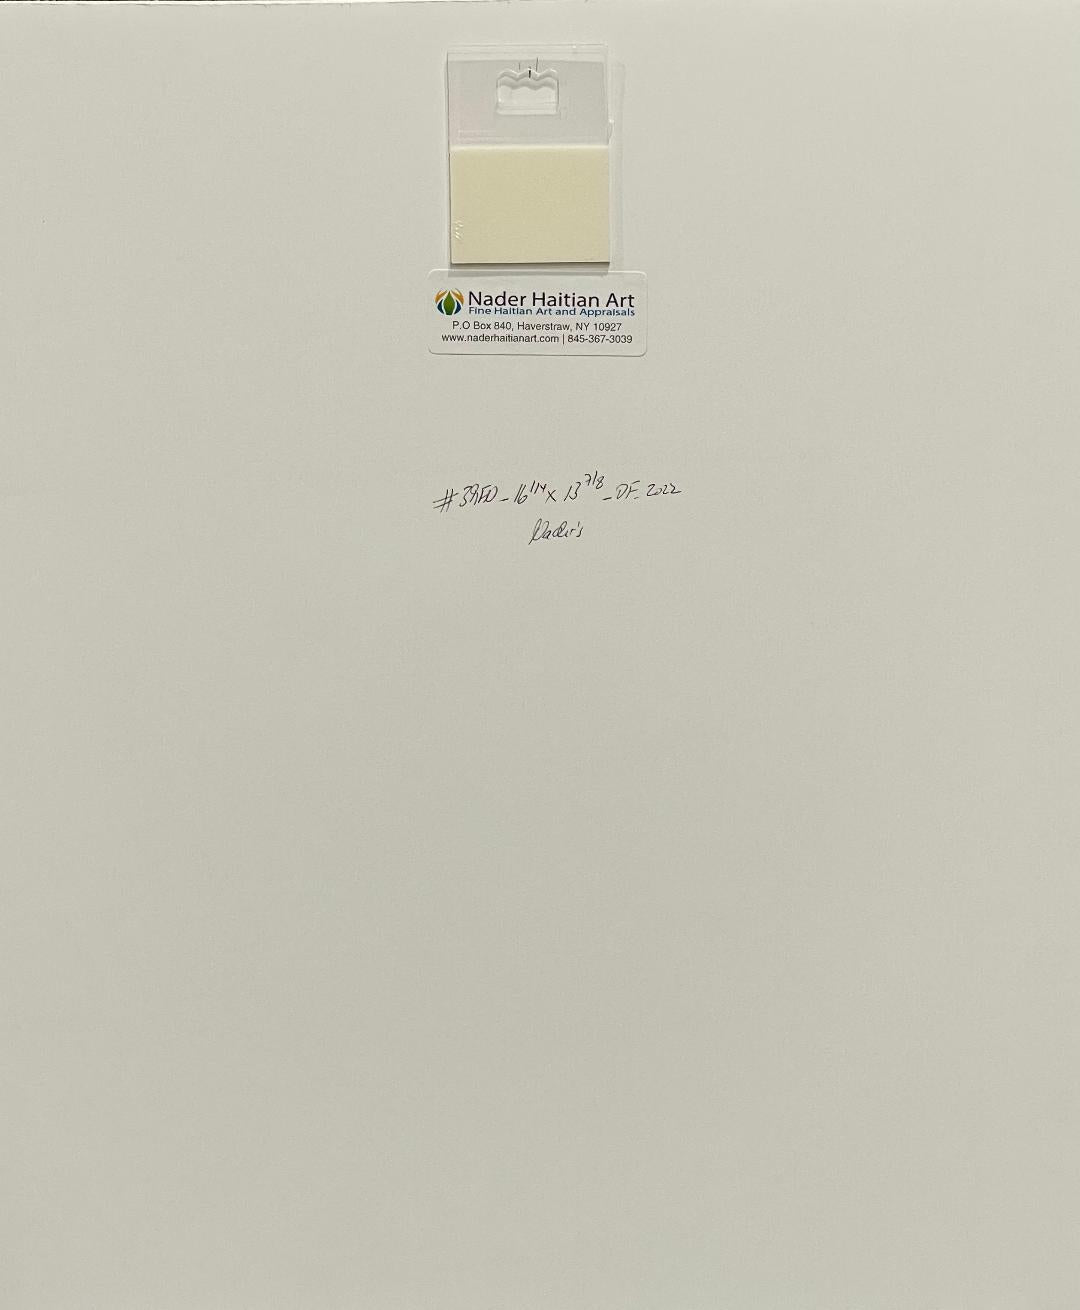 Onel-Lionel Paul 16 ¼"x13 ⅞" Resumen/Dos espíritus en fondo amarillo 2001 Pintura acrílica sobre papel Bristol montado #3MFN